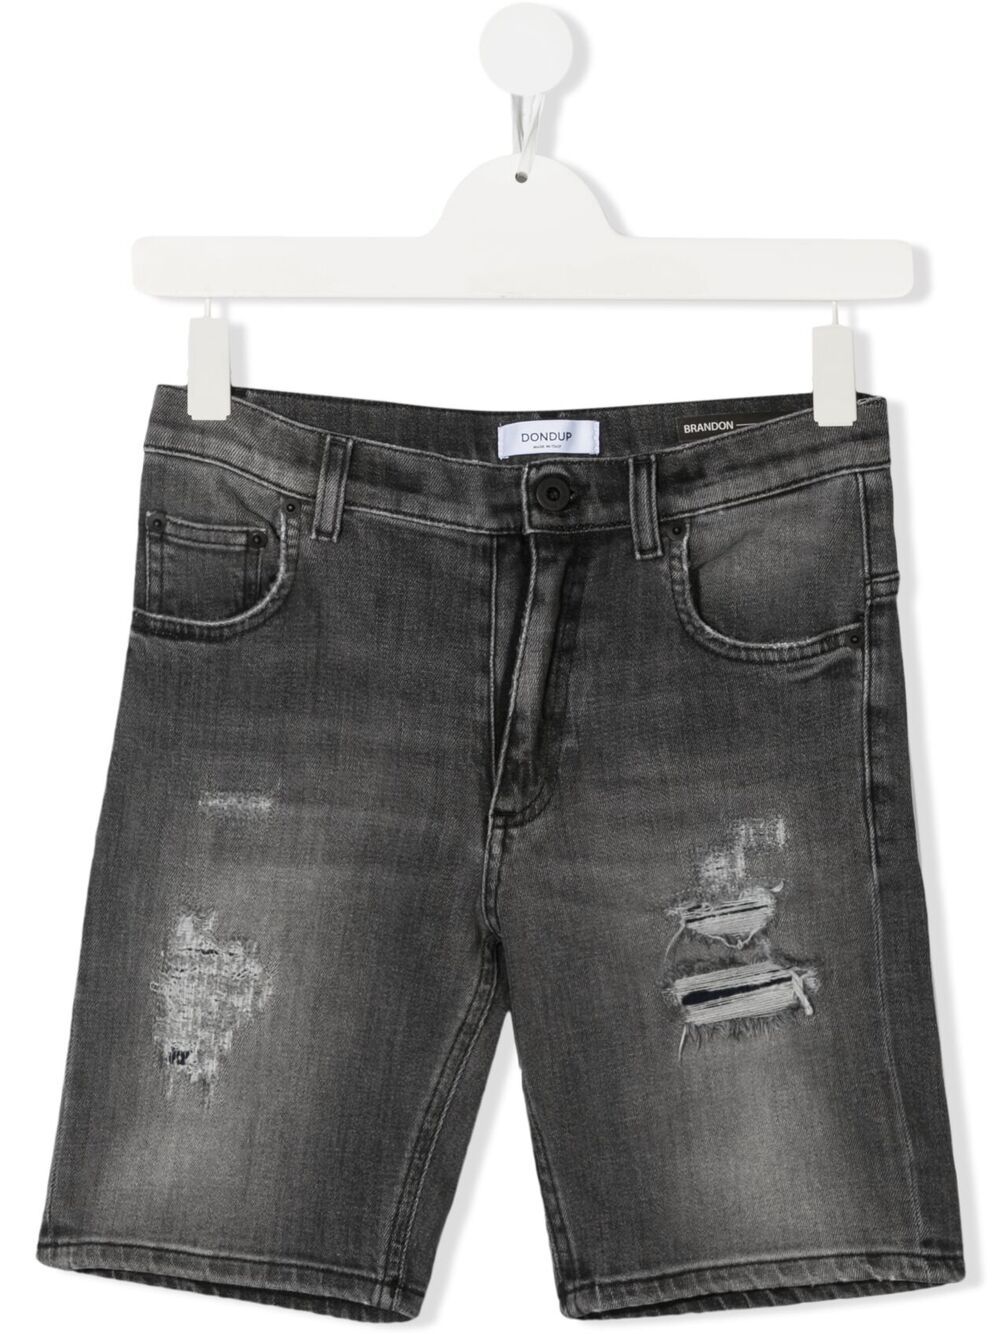 фото Dondup kids джинсовые шорты с эффектом потертости